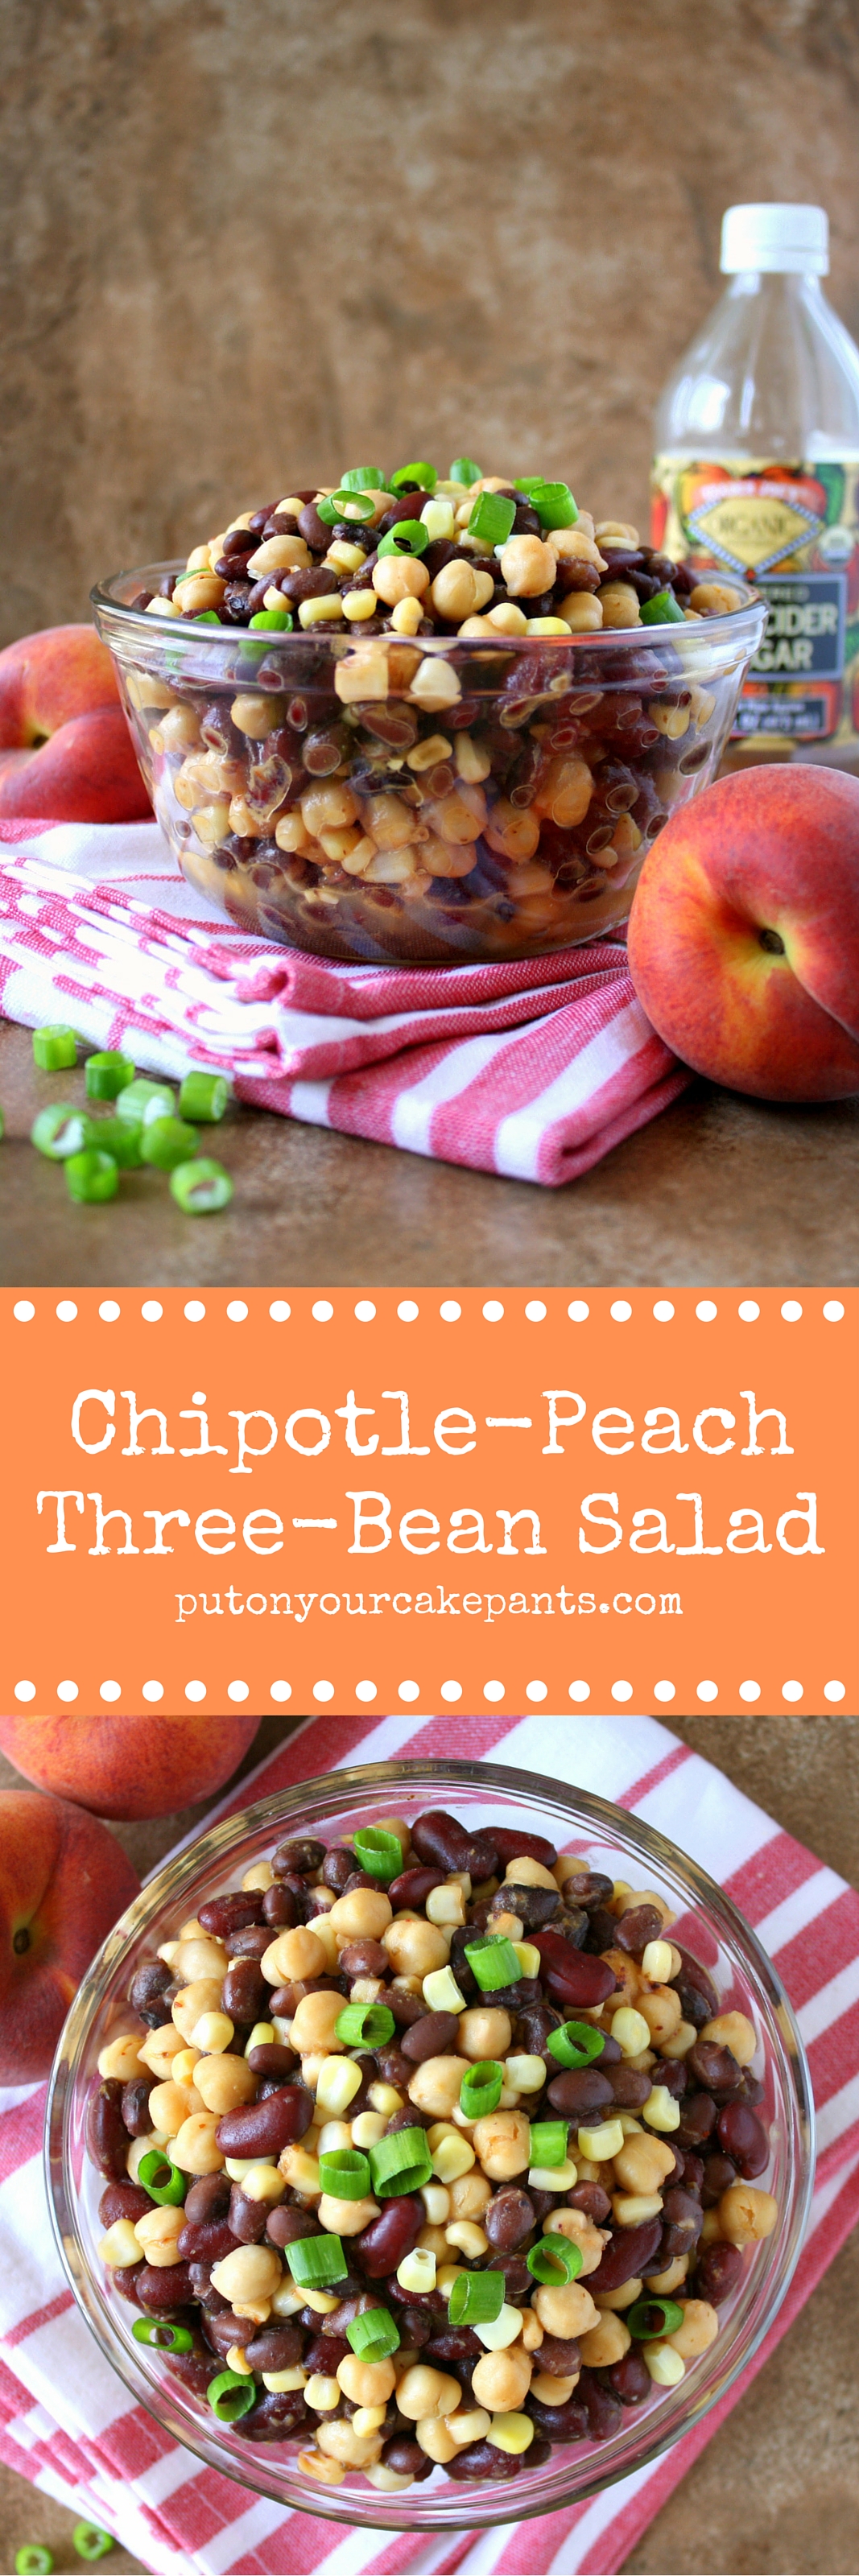 chipotle-peach three-bean salad